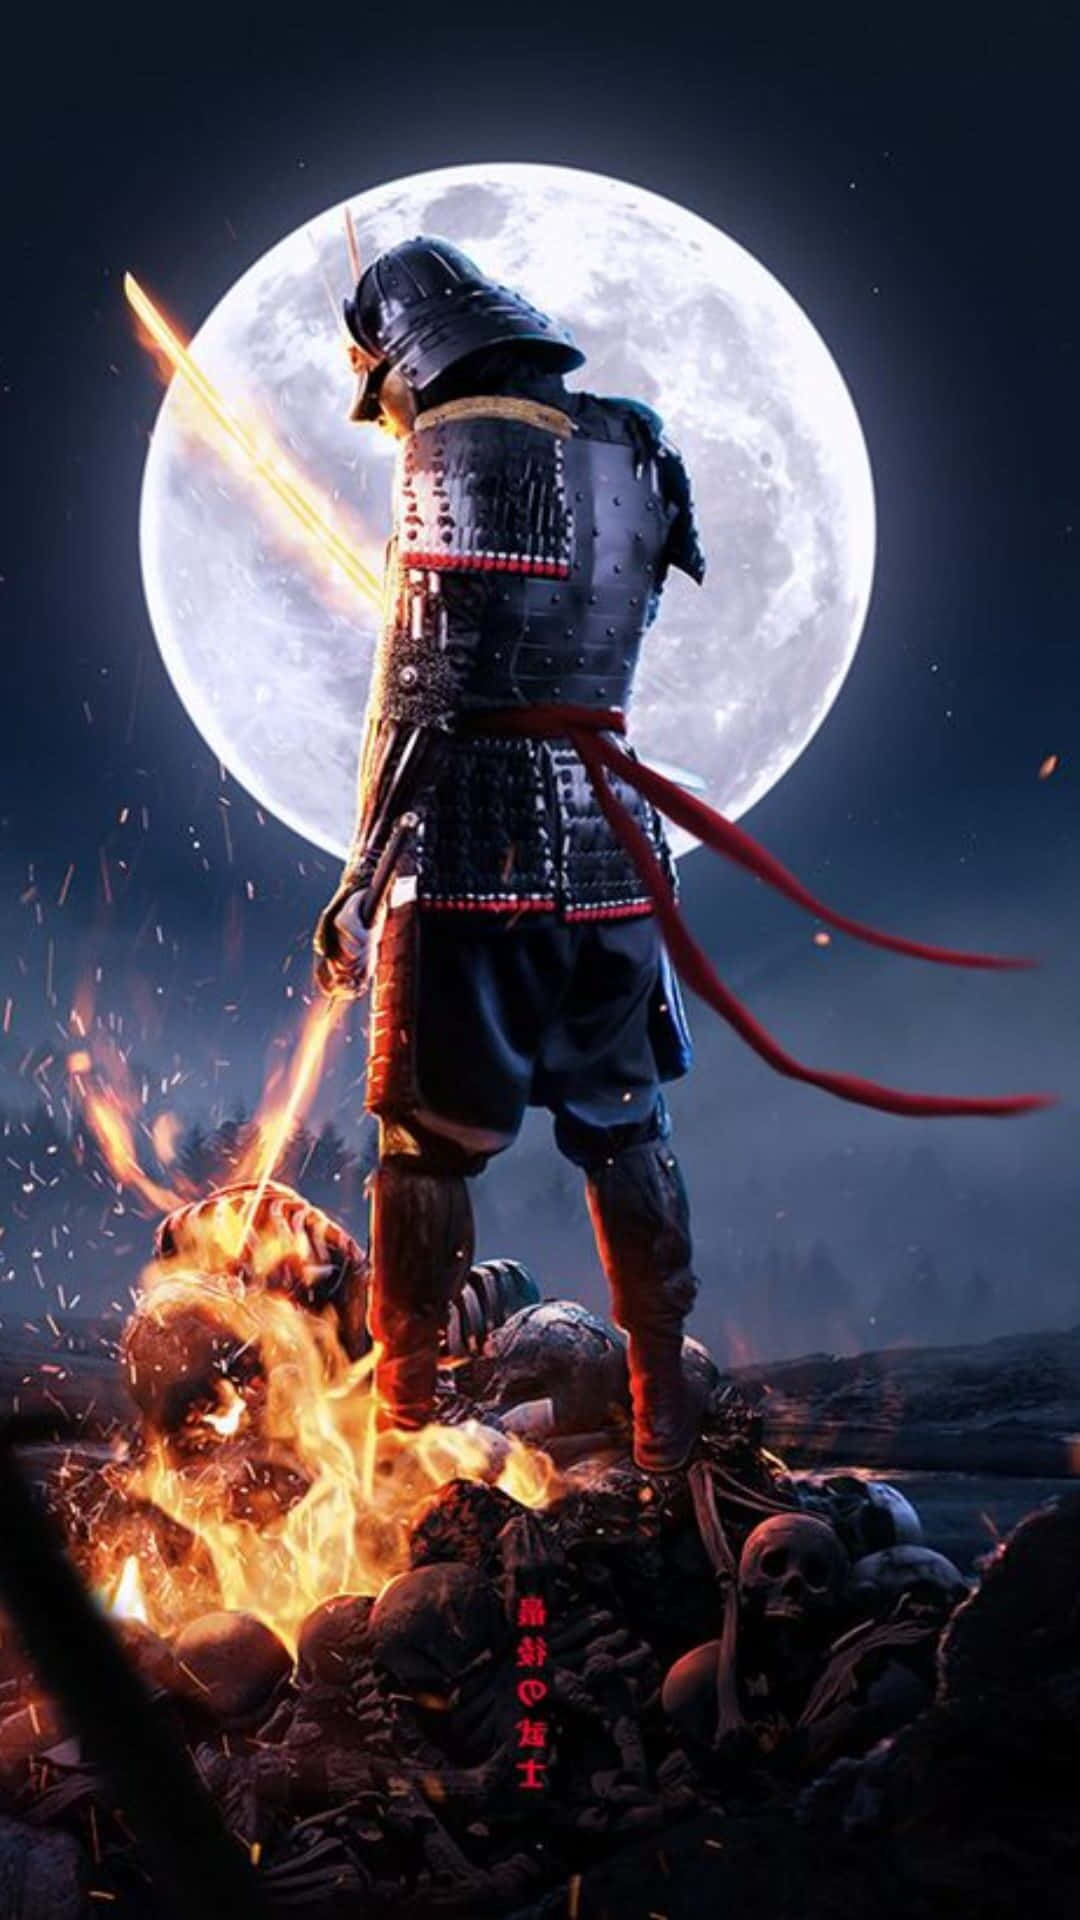 Download Dark Samurai With Two Blazing Swords Wallpaper | Wallpapers.com